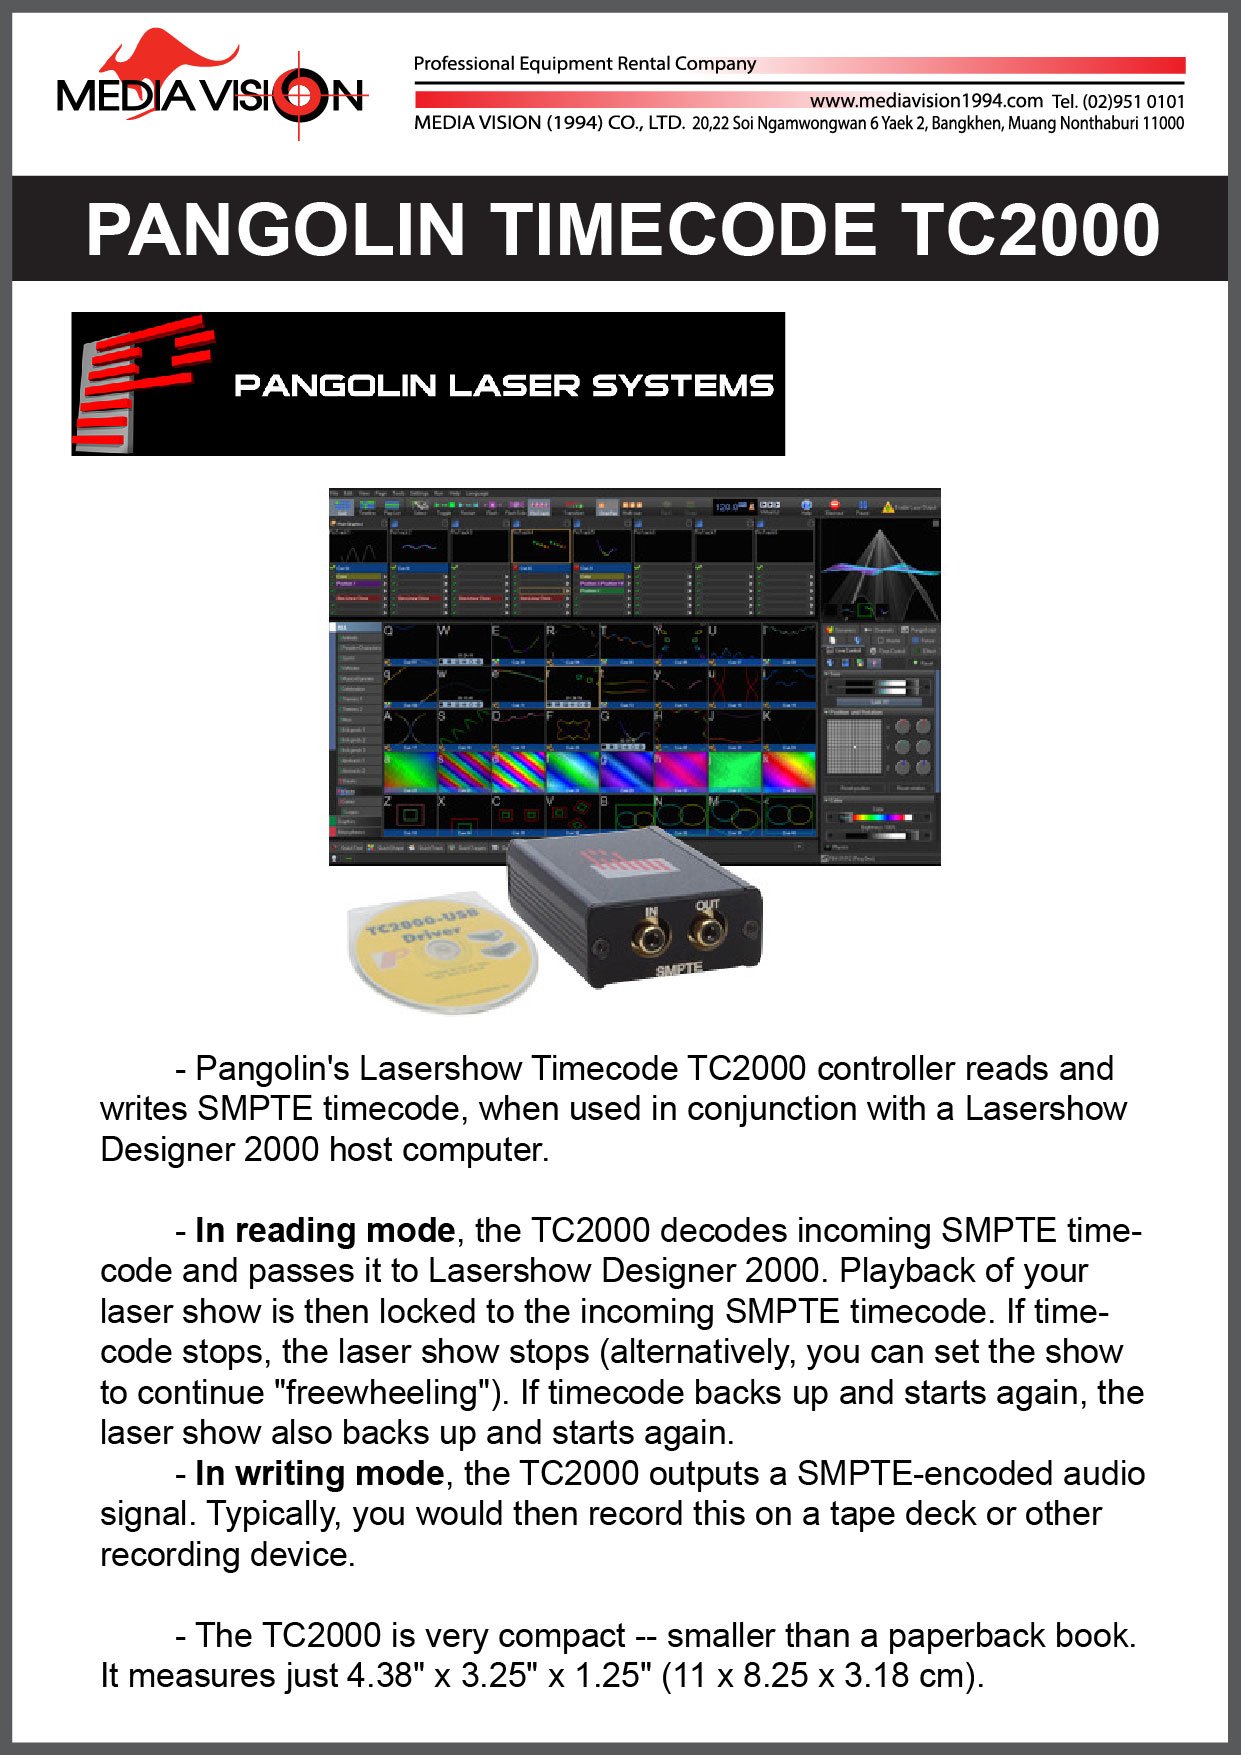 PANGOLIN TIMECODE TC2000